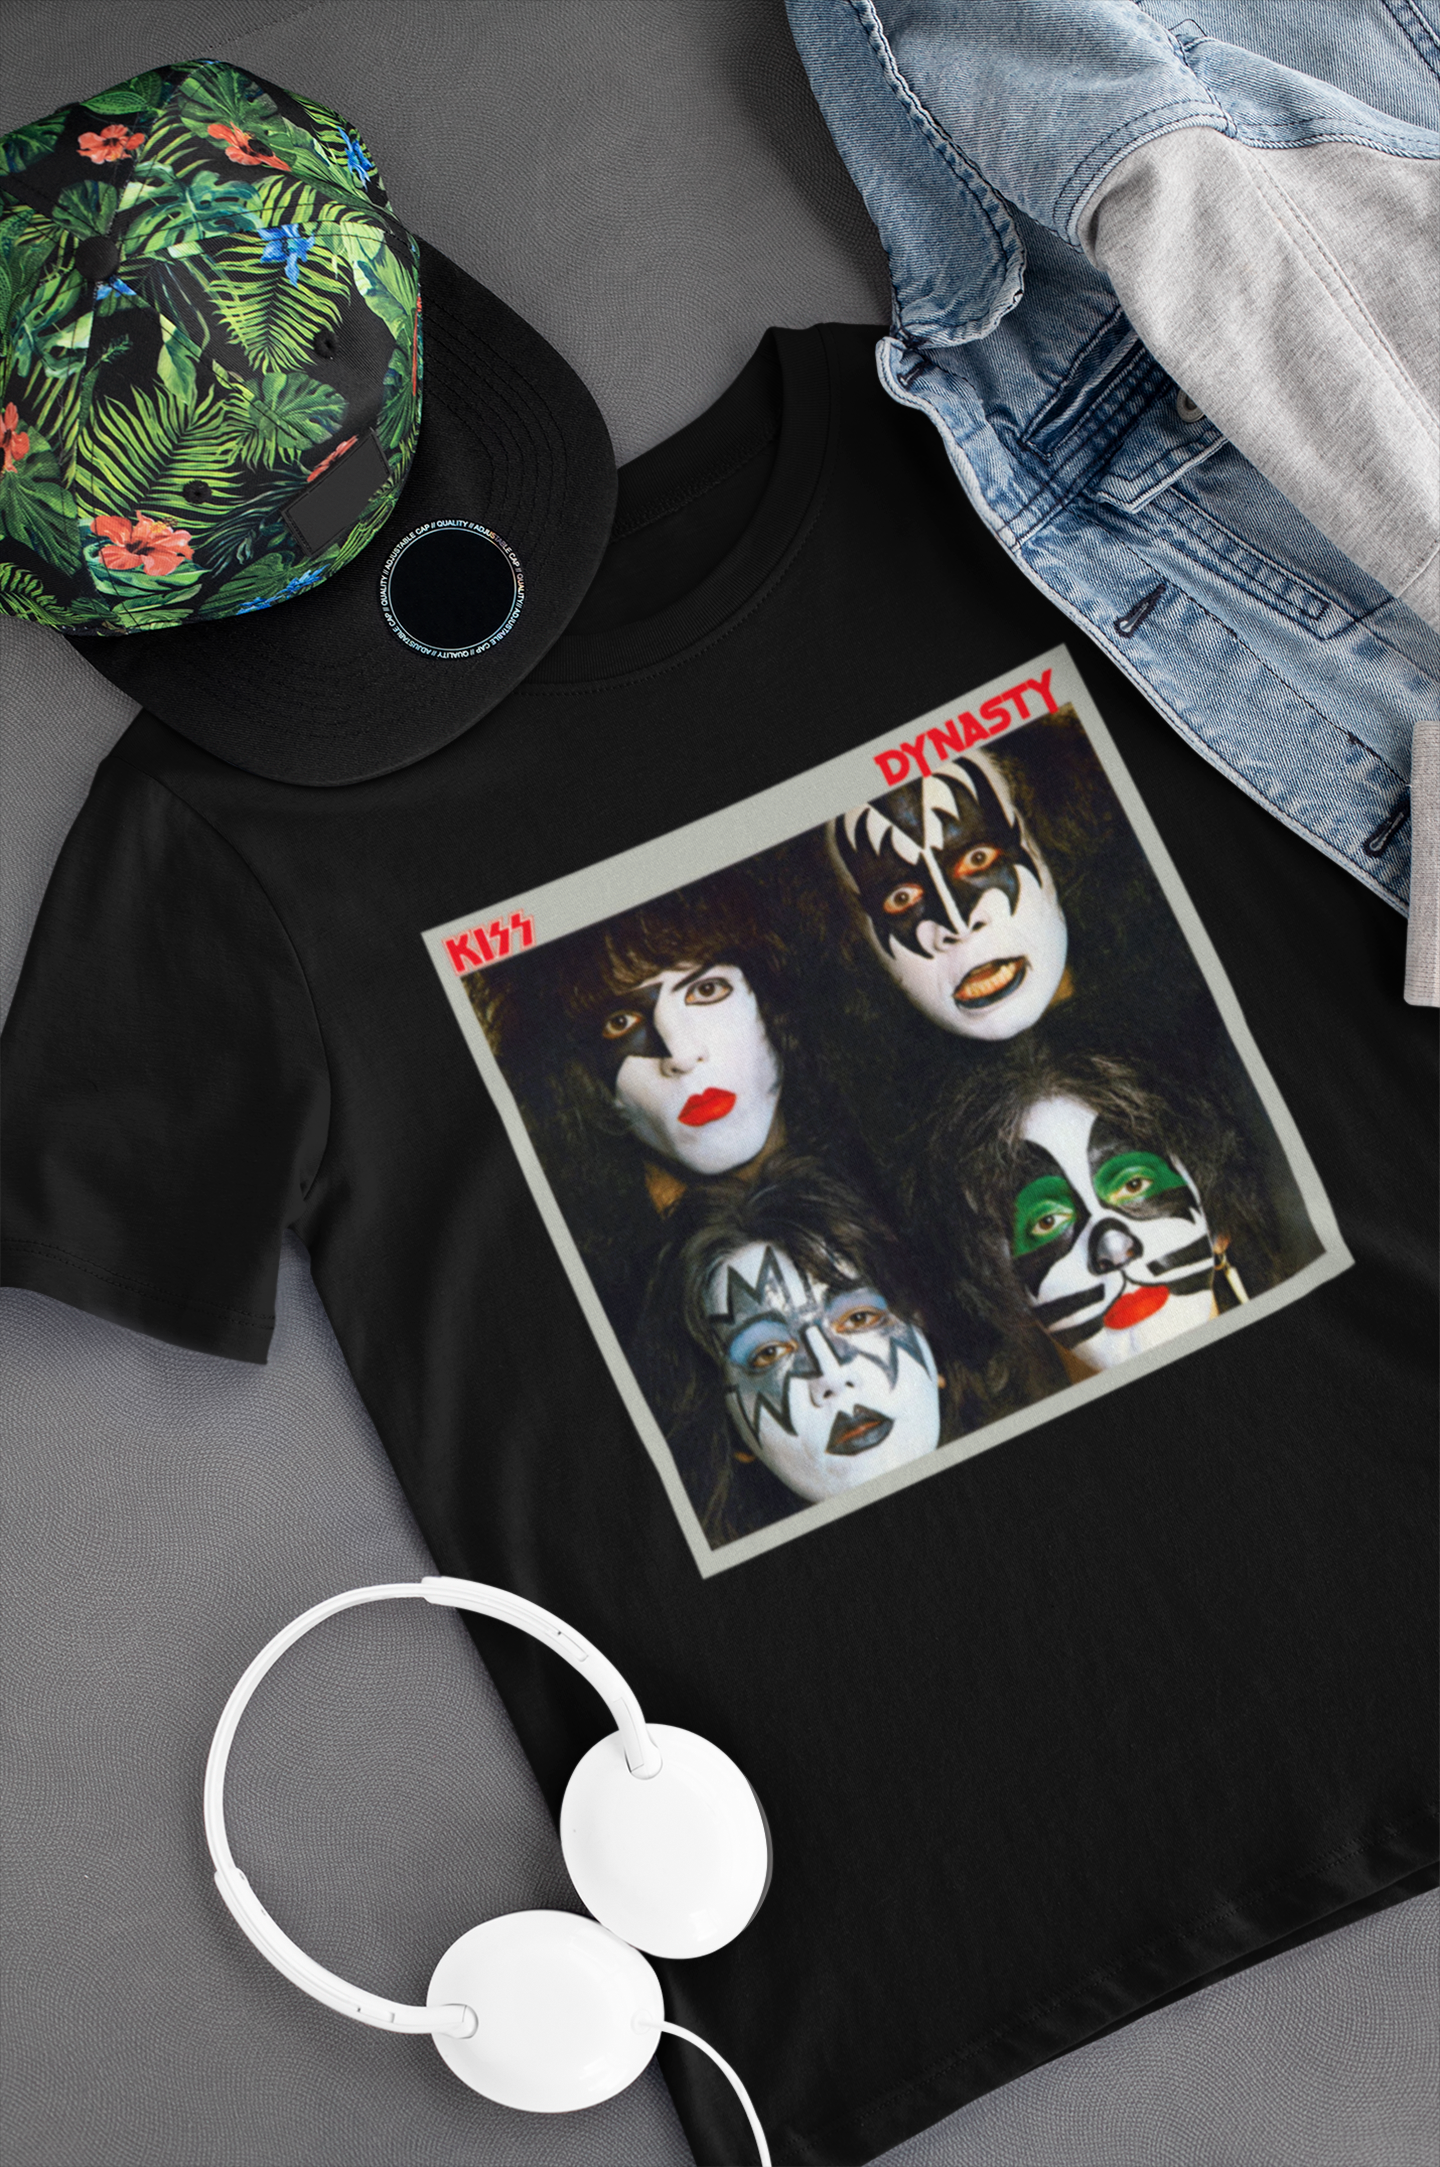 Camiseta "Dynasty - Kiss" - Álbum - Música